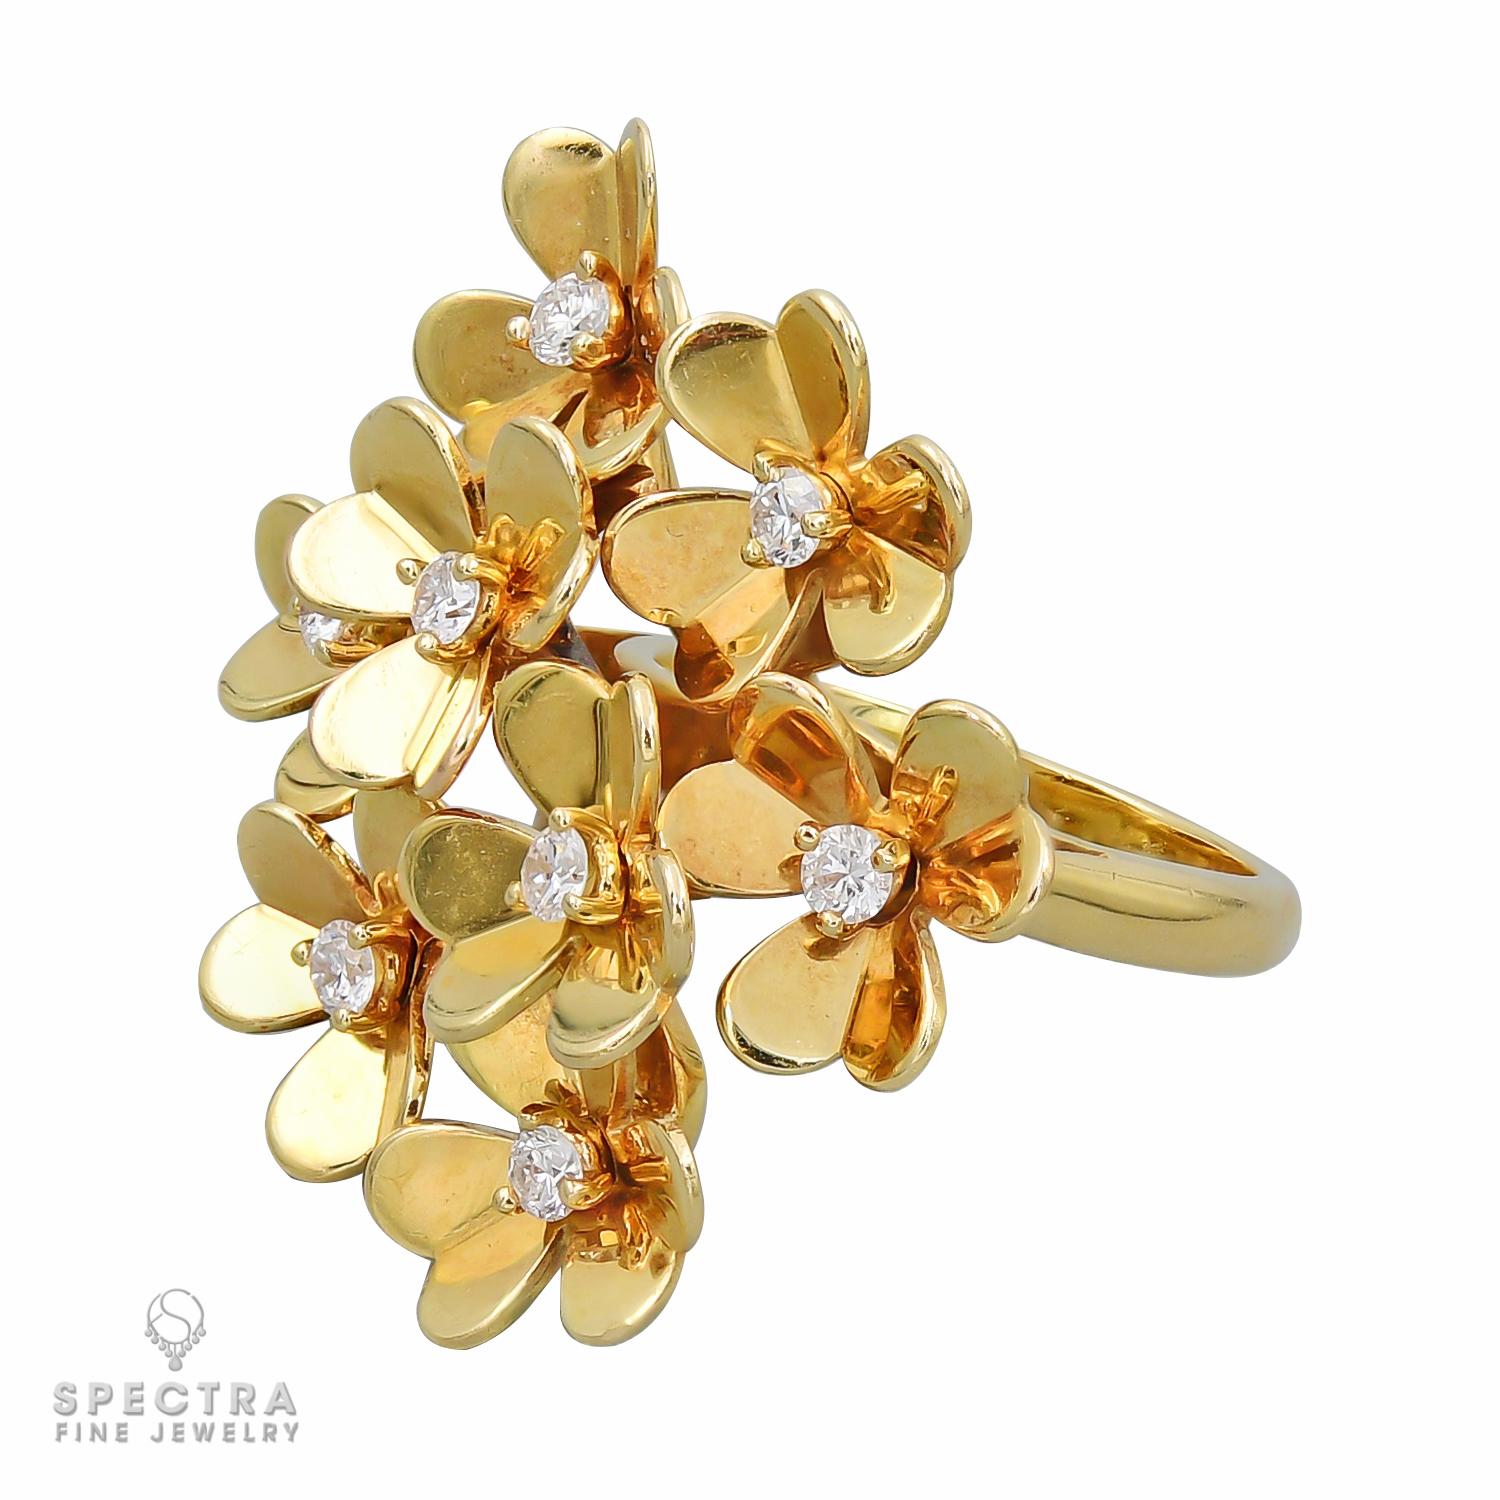 Ein Frivole Ring, bestehend aus 8 Blumen, besetzt mit runden Diamanten mit DEF Farbe, IF bis VVS Klarheit.
Metall ist 18k Gelbgold, Gewicht 11,95 Gramm.
Signiert VCA 750, gestempelt mit Seriennummer.
Größe 51 (US 5.5)
Einzelhandel: $9.900 vor